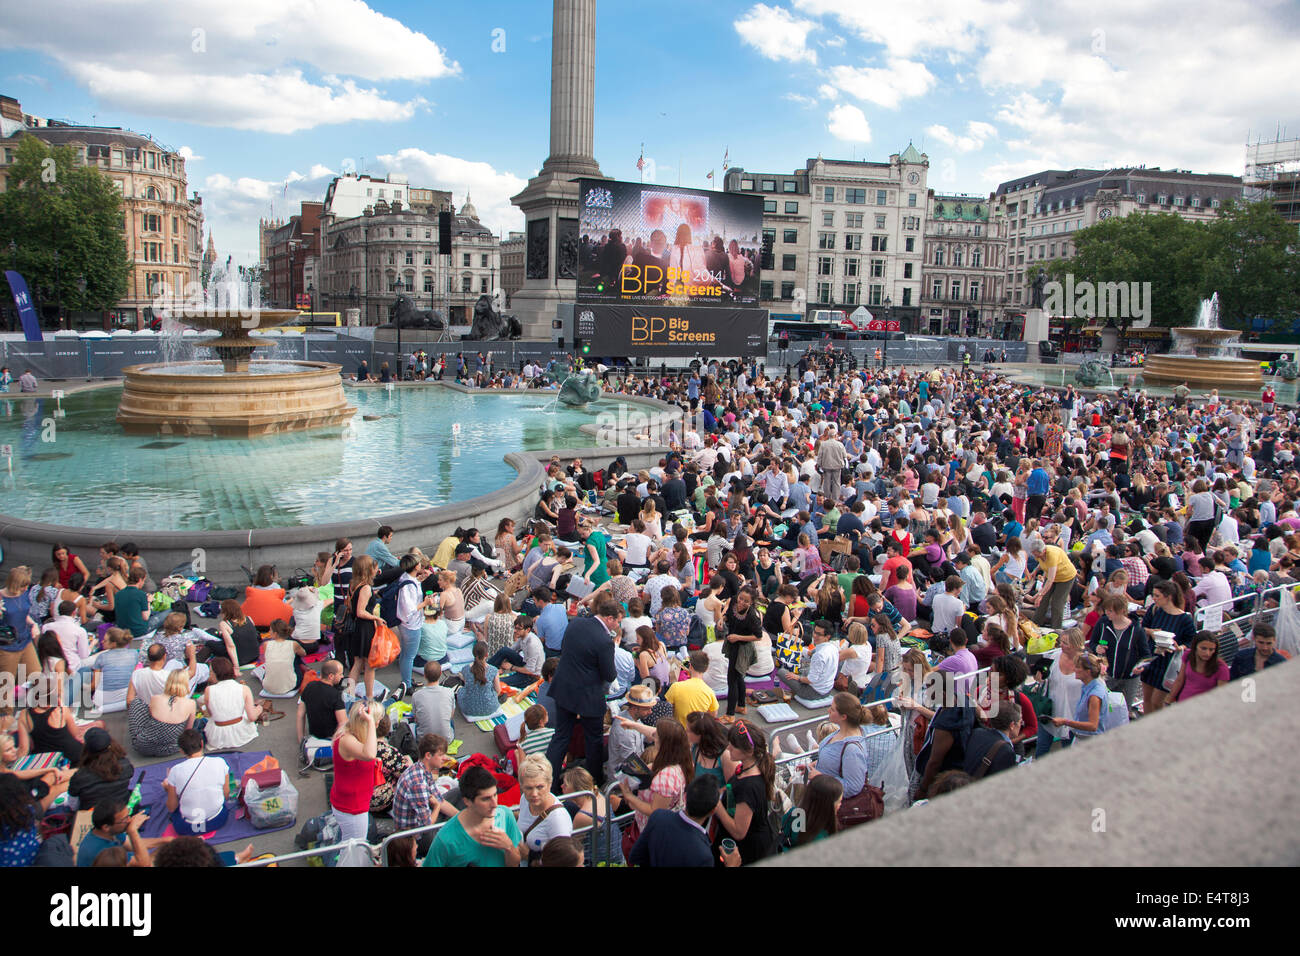 15/07/2014 LONDRES, REINO UNIDO - BP Verano pantallas, viven el cribado de la Boheme en el Royal Opera House Trafalgar Square Foto de stock